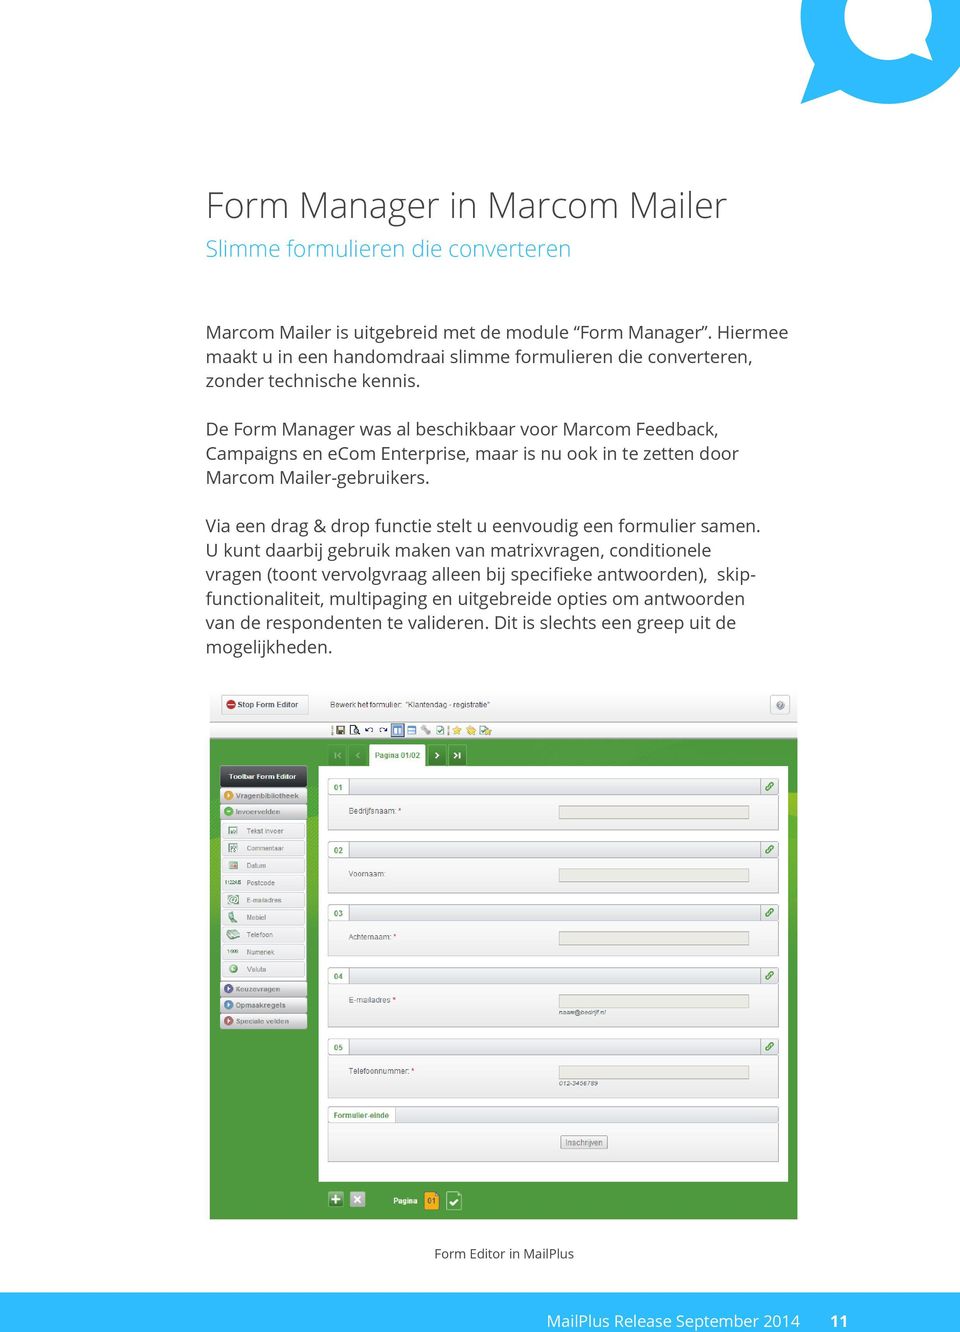 De Form Manager was al beschikbaar voor Marcom Feedback, Campaigns en ecom Enterprise, maar is nu ook in te zetten door Marcom Mailer-gebruikers.